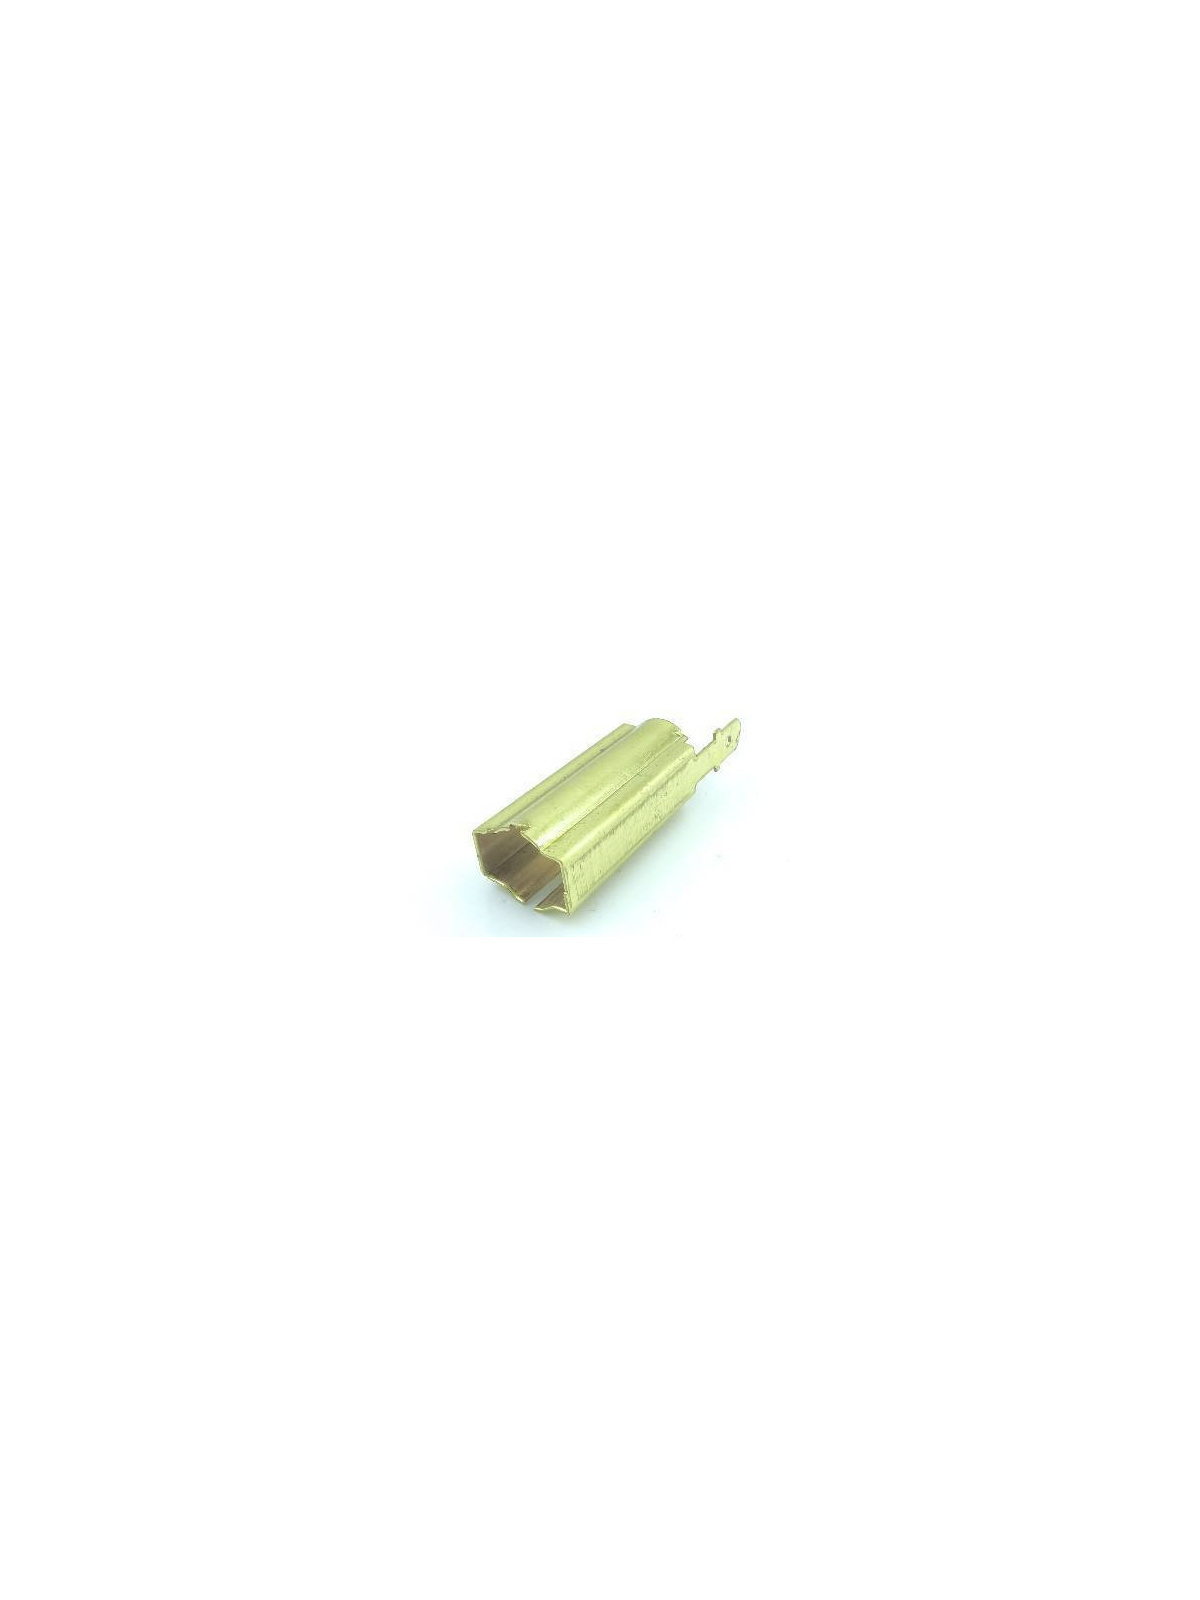 Virutex 3318024 Brass for brush holder | JVL-Europe